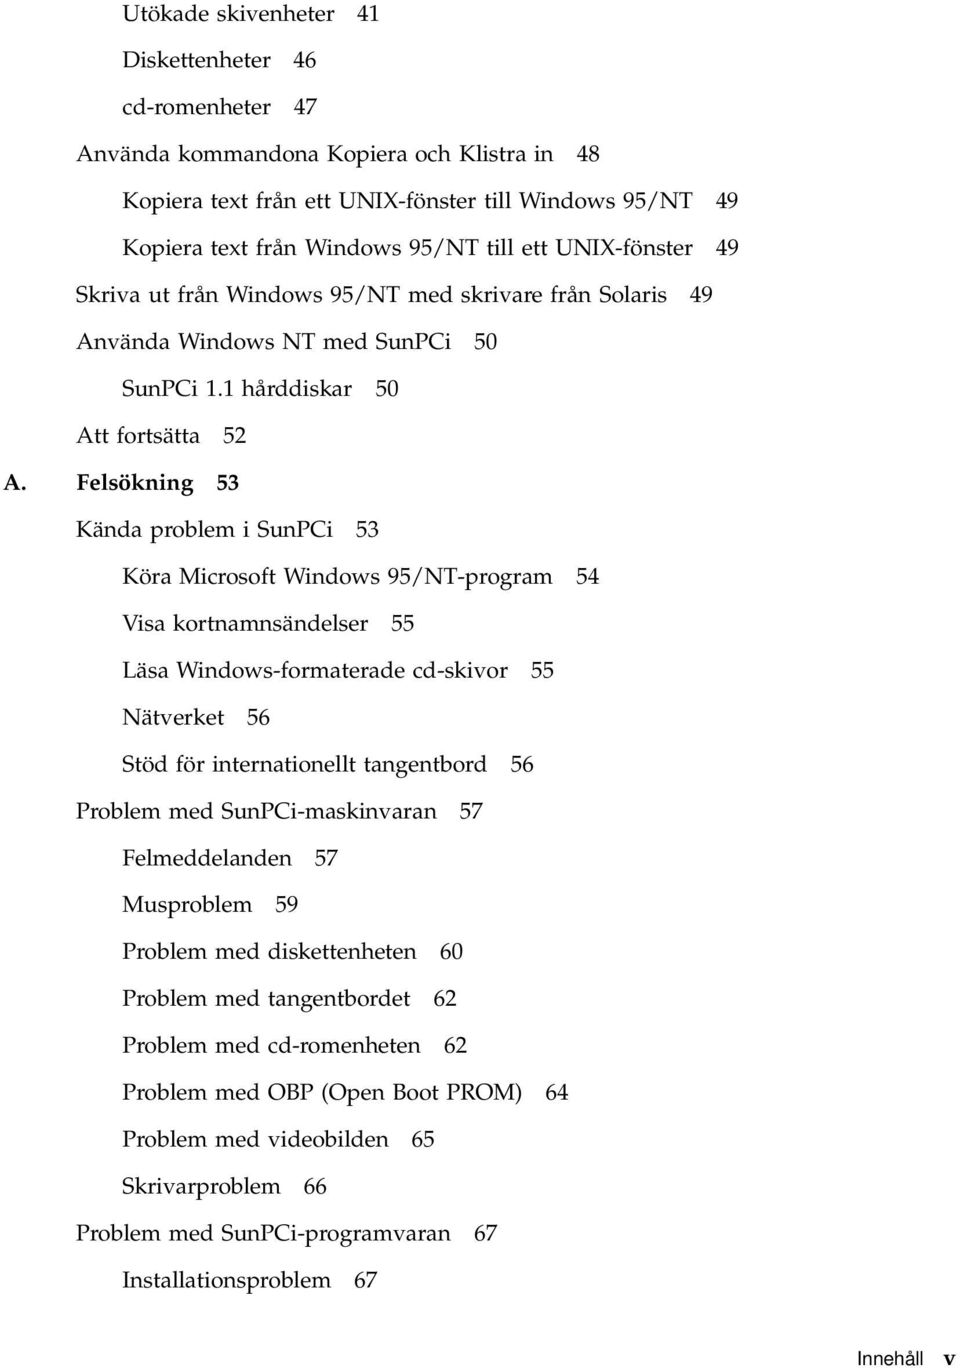 Felsökning 53 Kända problem i SunPCi 53 Köra Microsoft Windows 95/NT-program 54 Visa kortnamnsändelser 55 Läsa Windows-formaterade cd-skivor 55 Nätverket 56 Stöd för internationellt tangentbord 56